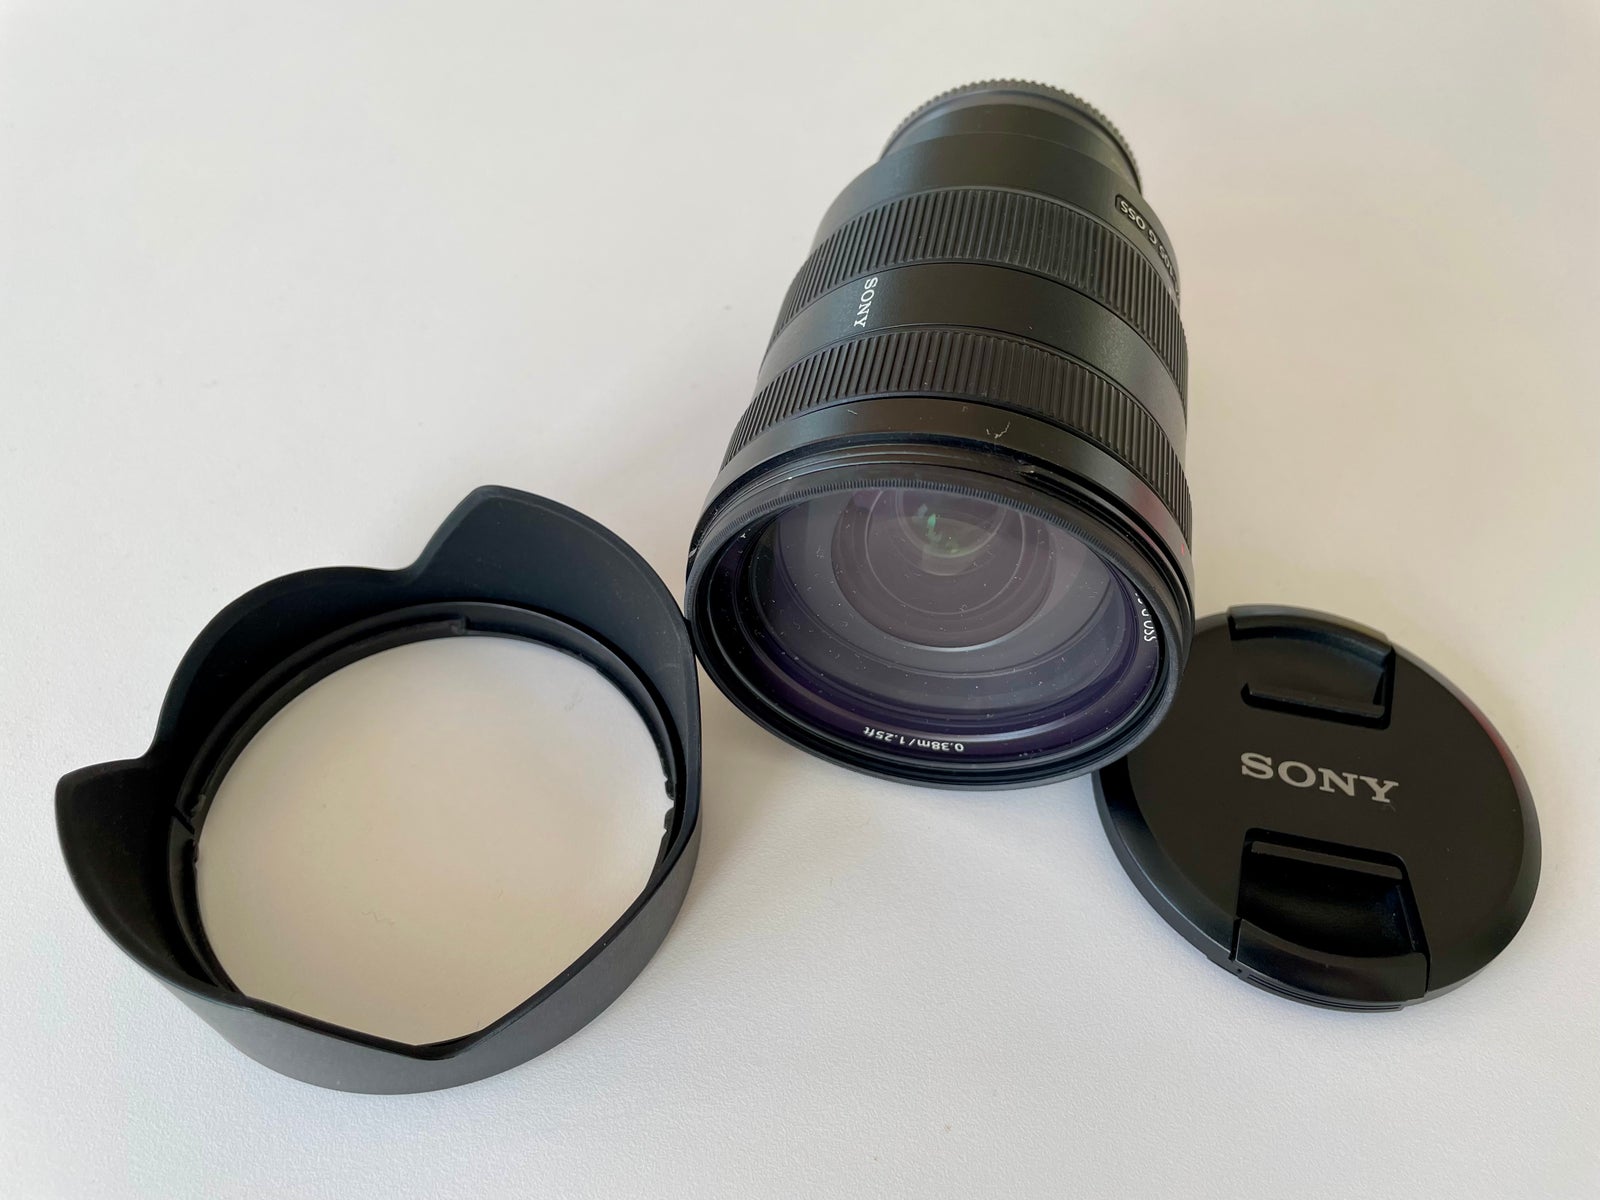 Zoom, Sony, FE 24-105 mm F4 G OSS